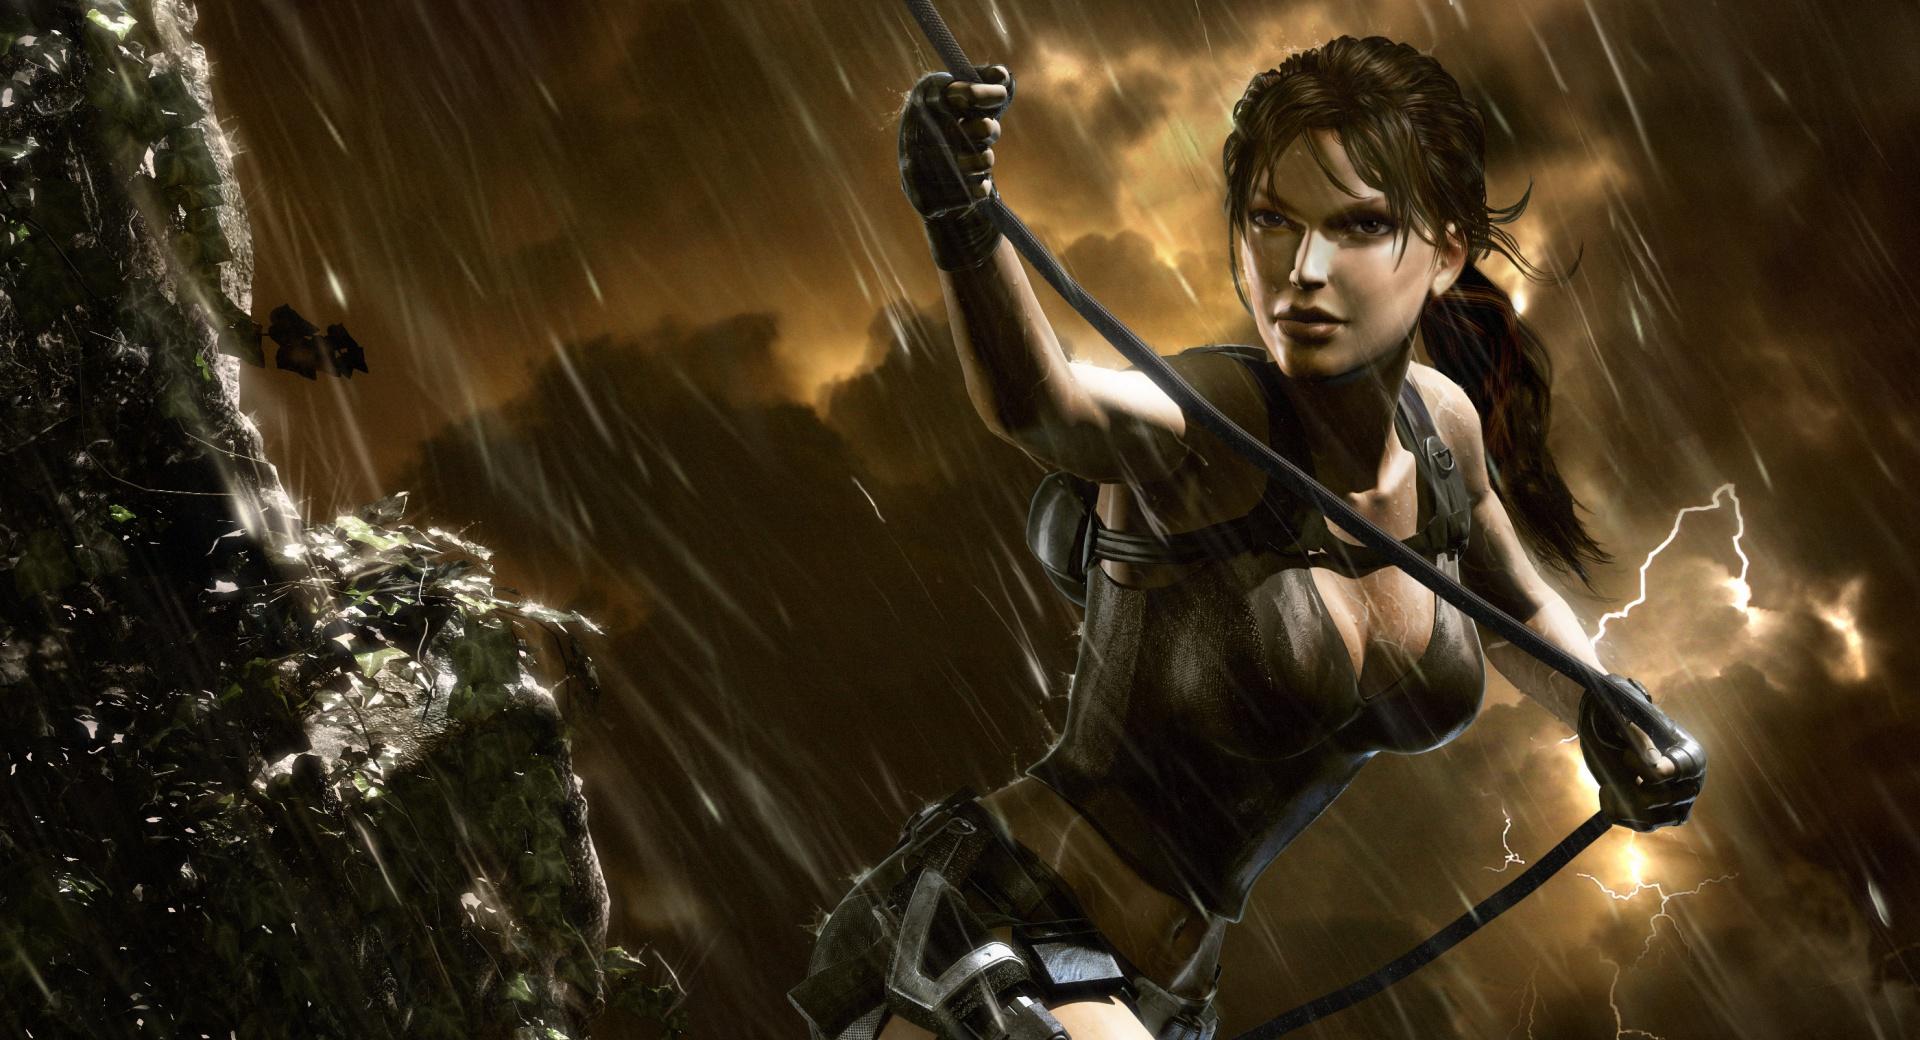 Tomb Raider Underworld Storm at 2048 x 2048 iPad size wallpapers HD quality